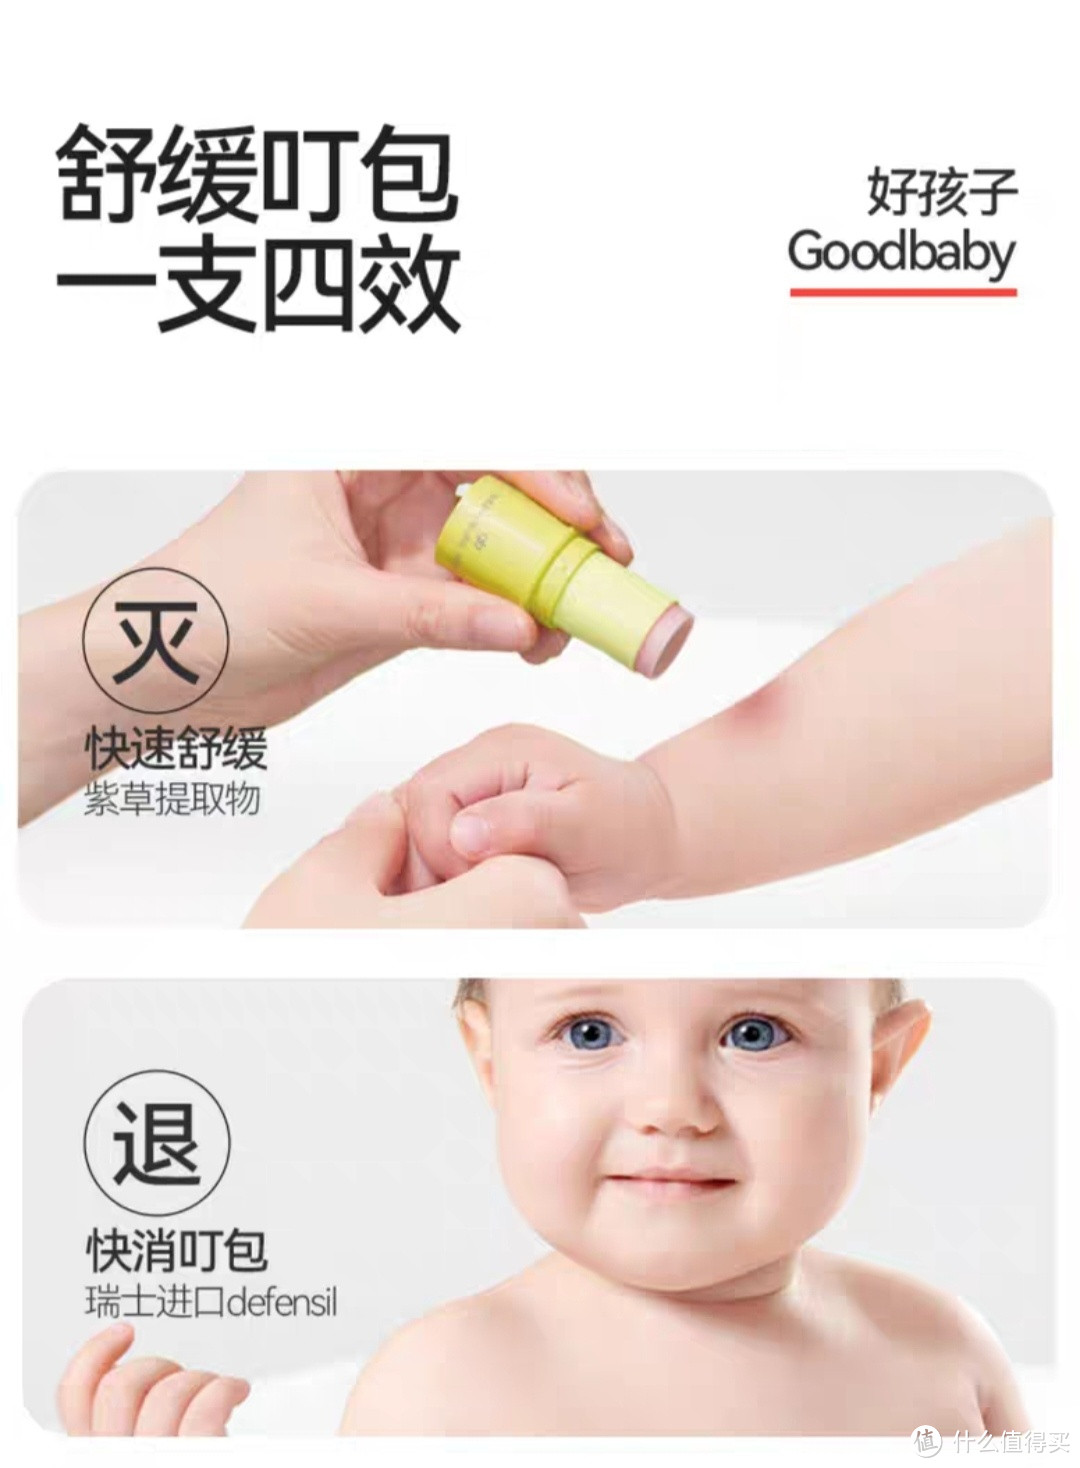 宝宝被蚊虫叮咬，快给他试试这款好孩子紫草膏吧，解决蚊虫叮咬，舒缓肌肤不刺激。